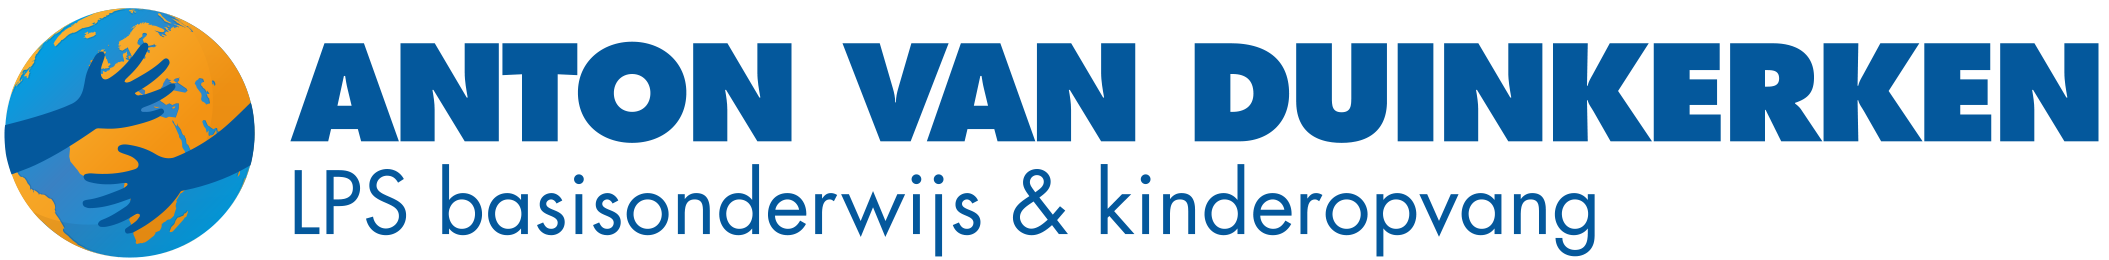 LPS Anton van Duinkerken | logo